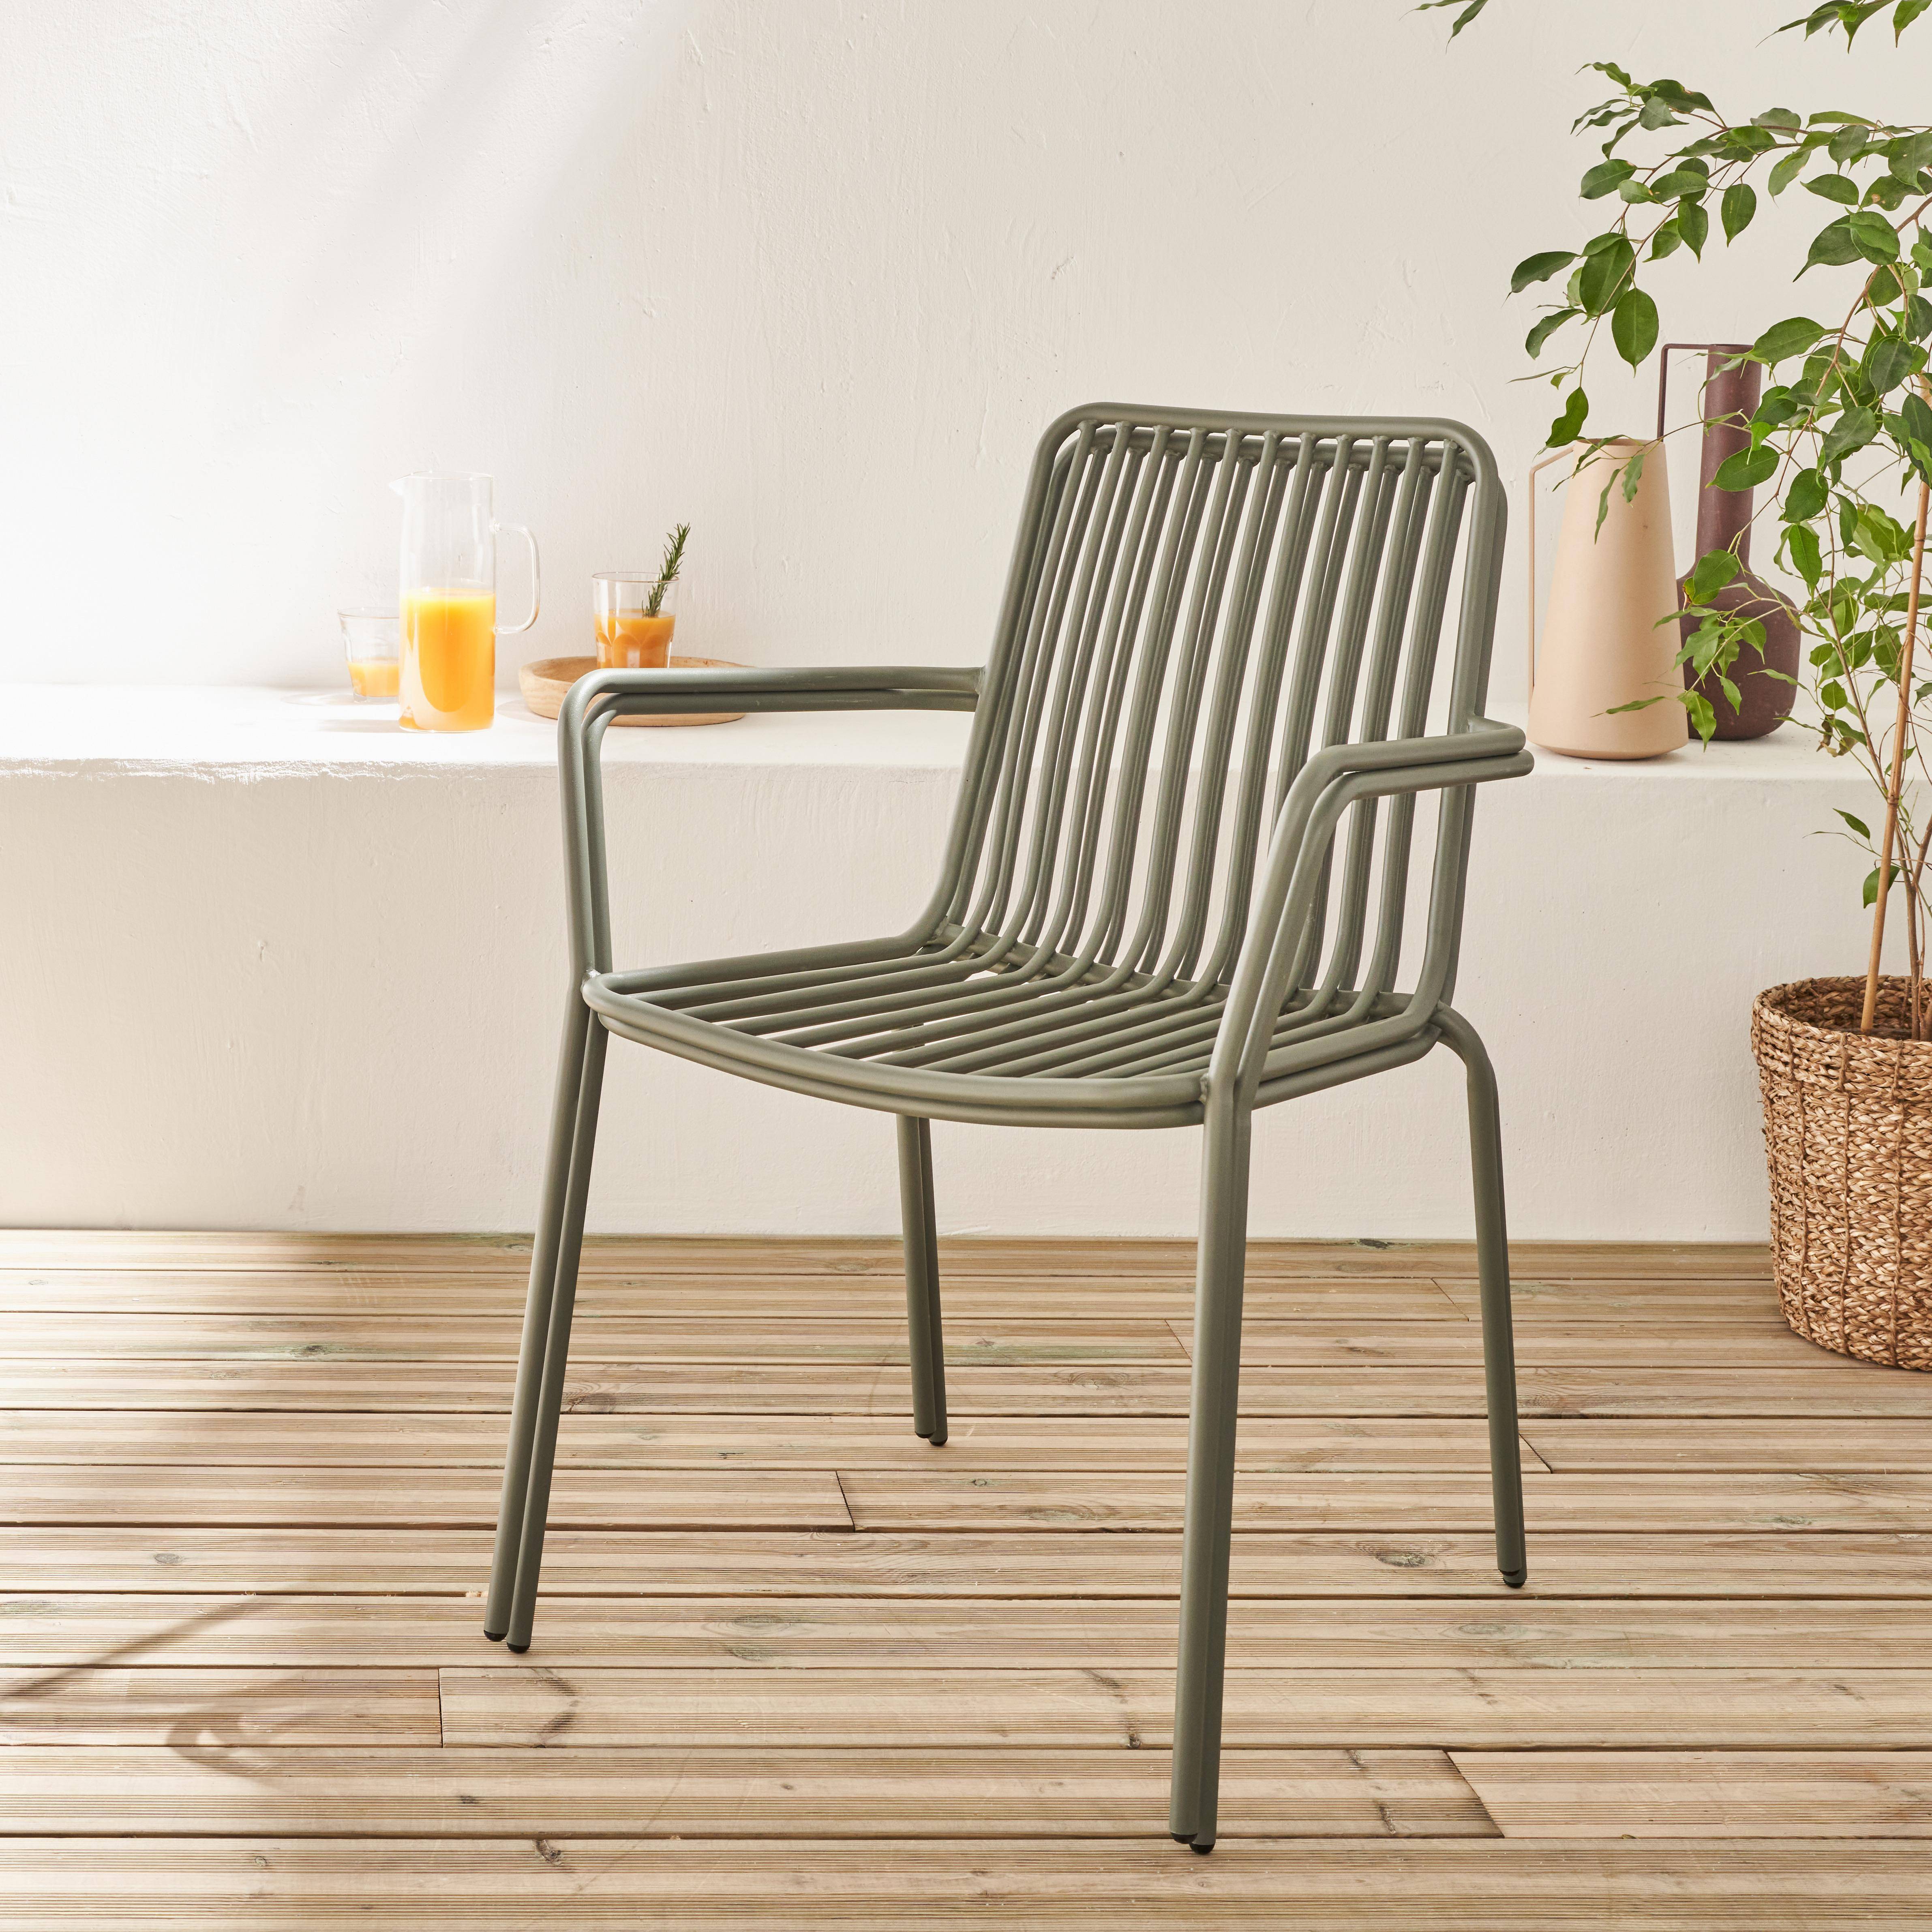 2er Set stapelbare Stühle aus Stahl mit Armlehnen - salbeigrün - Florida,sweeek,Photo3